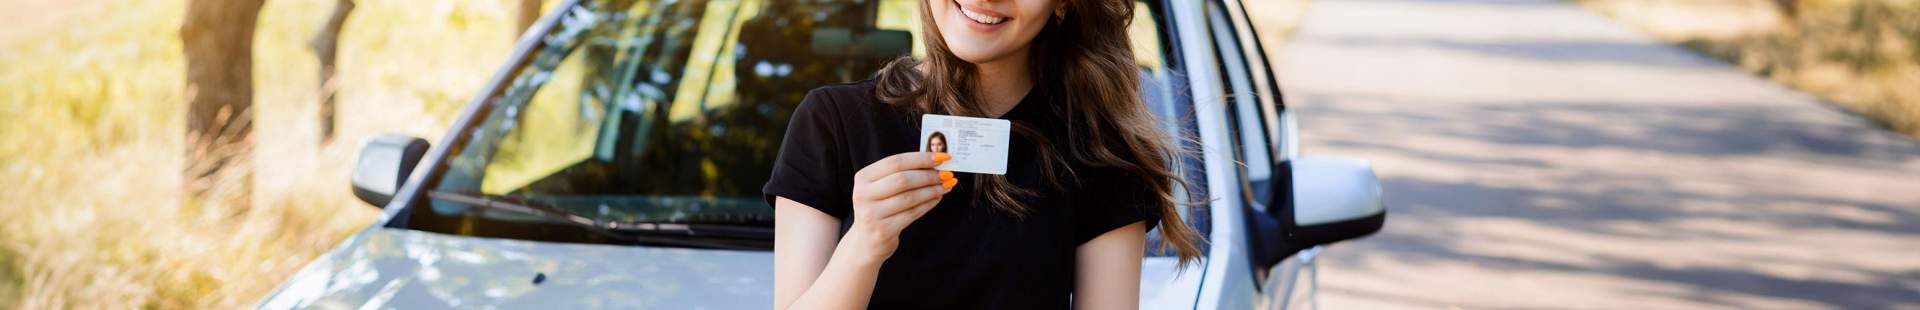 Junge Frau mit Führerschein in der Hand